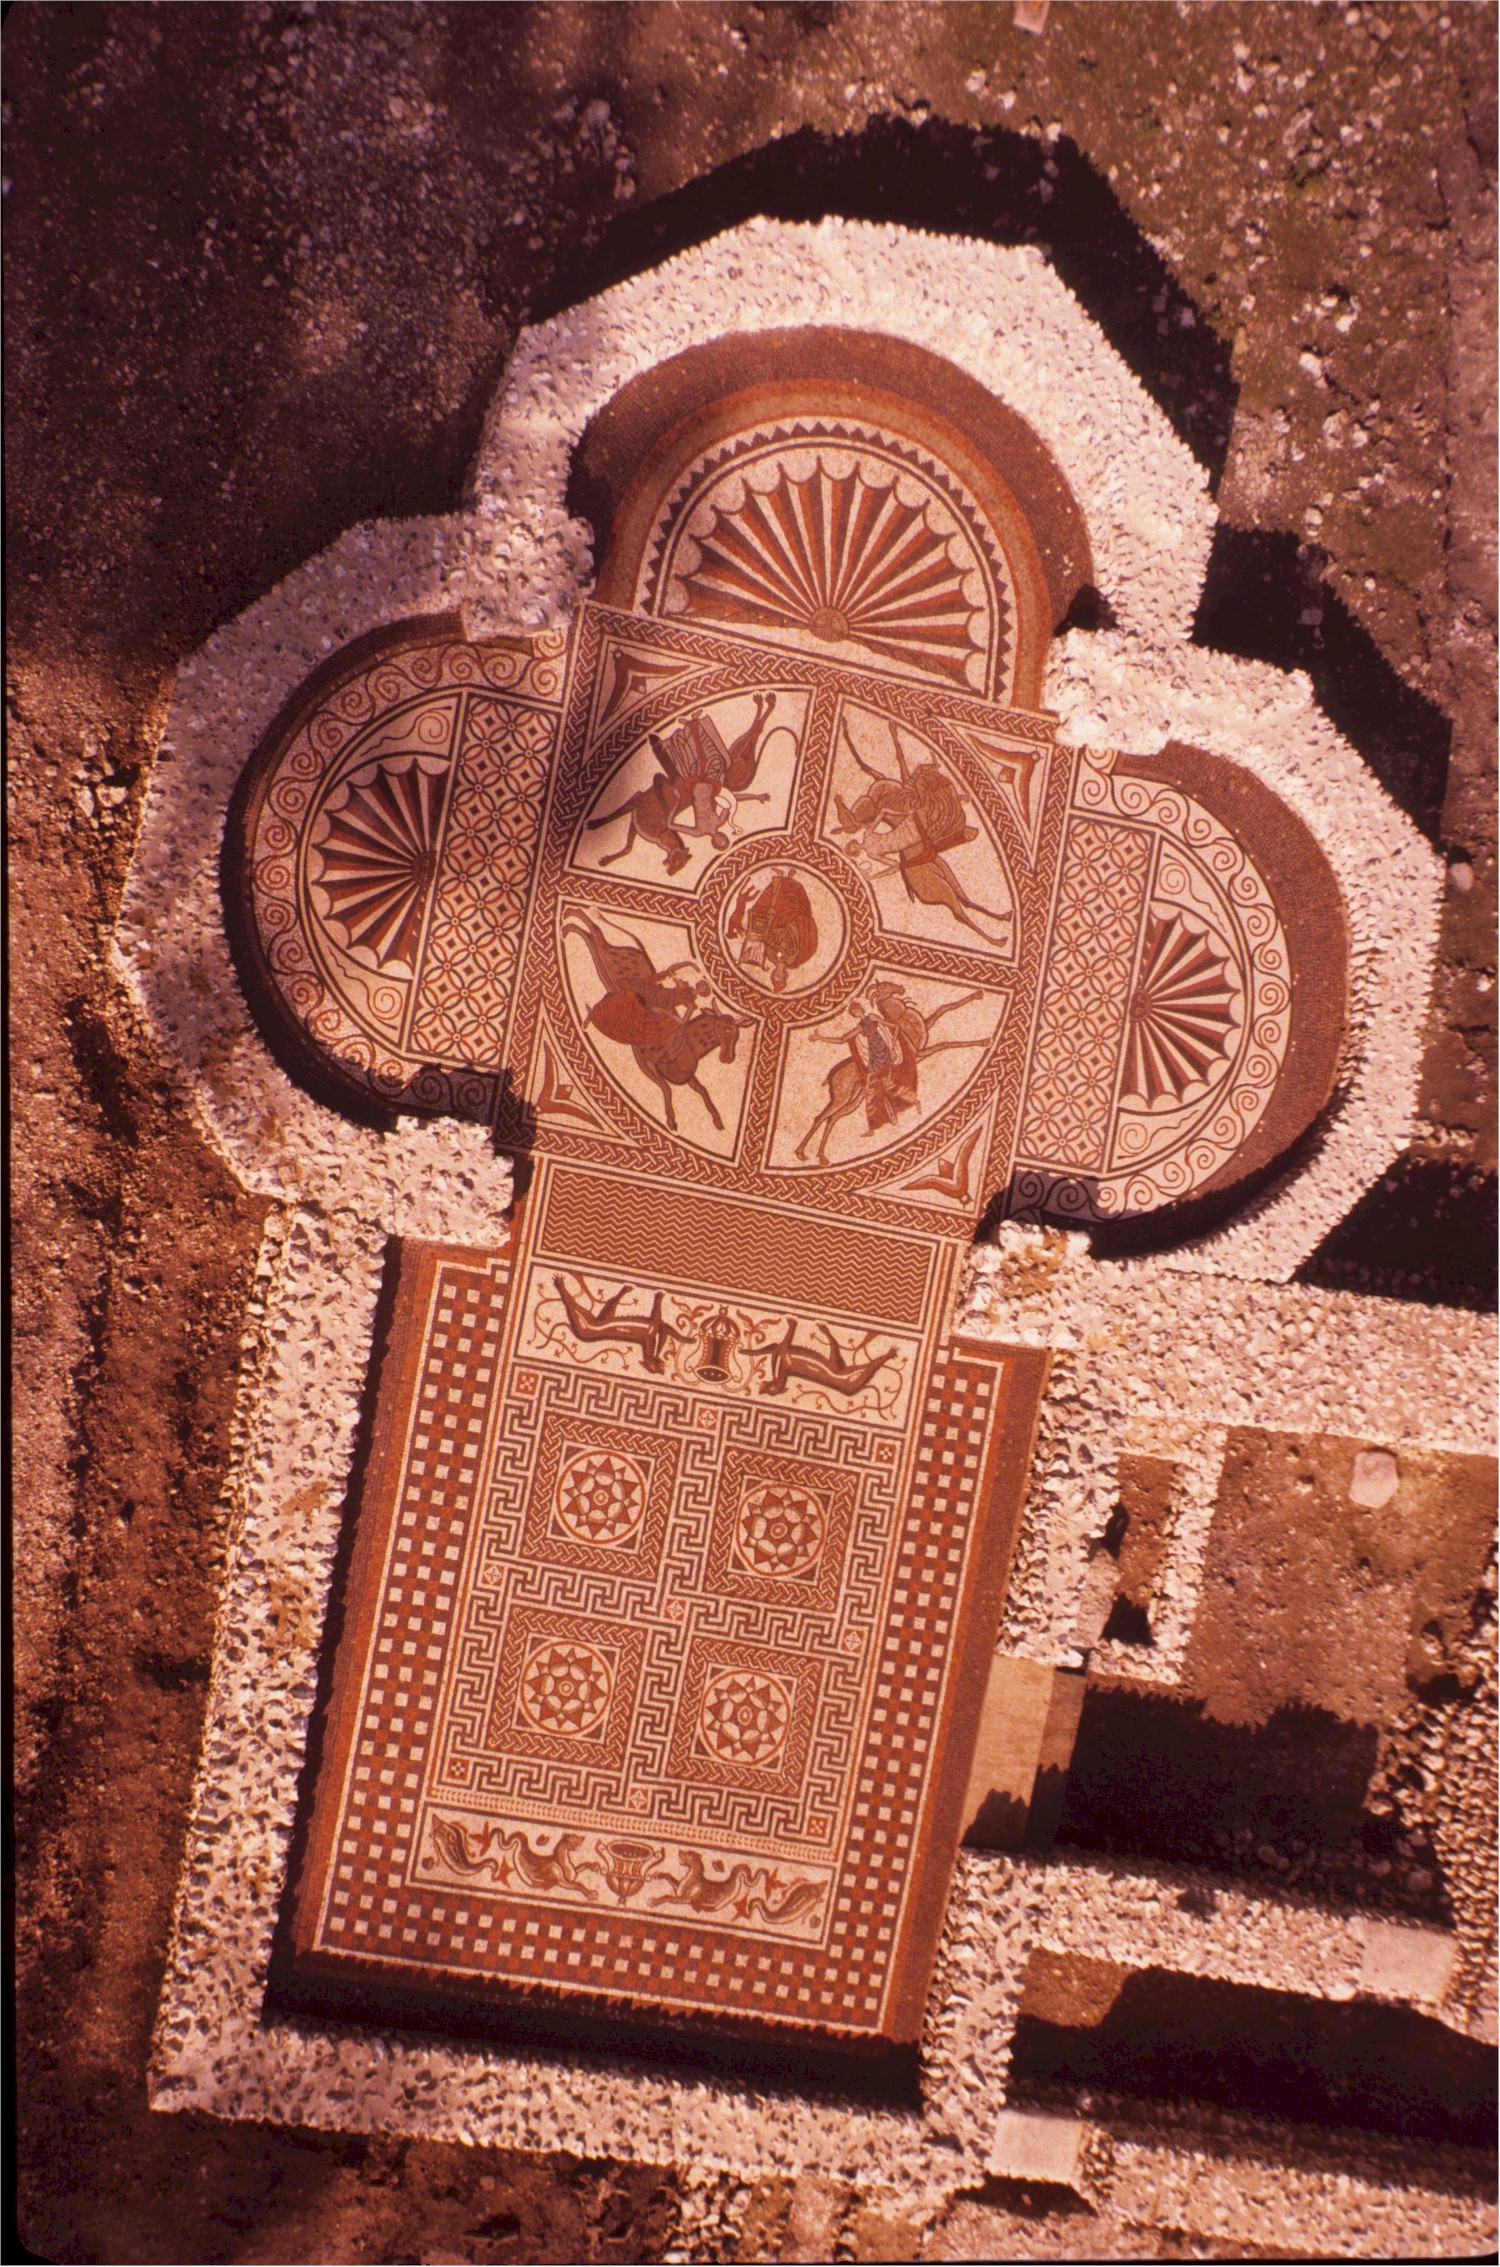  Roman Mosaic, Littlecote